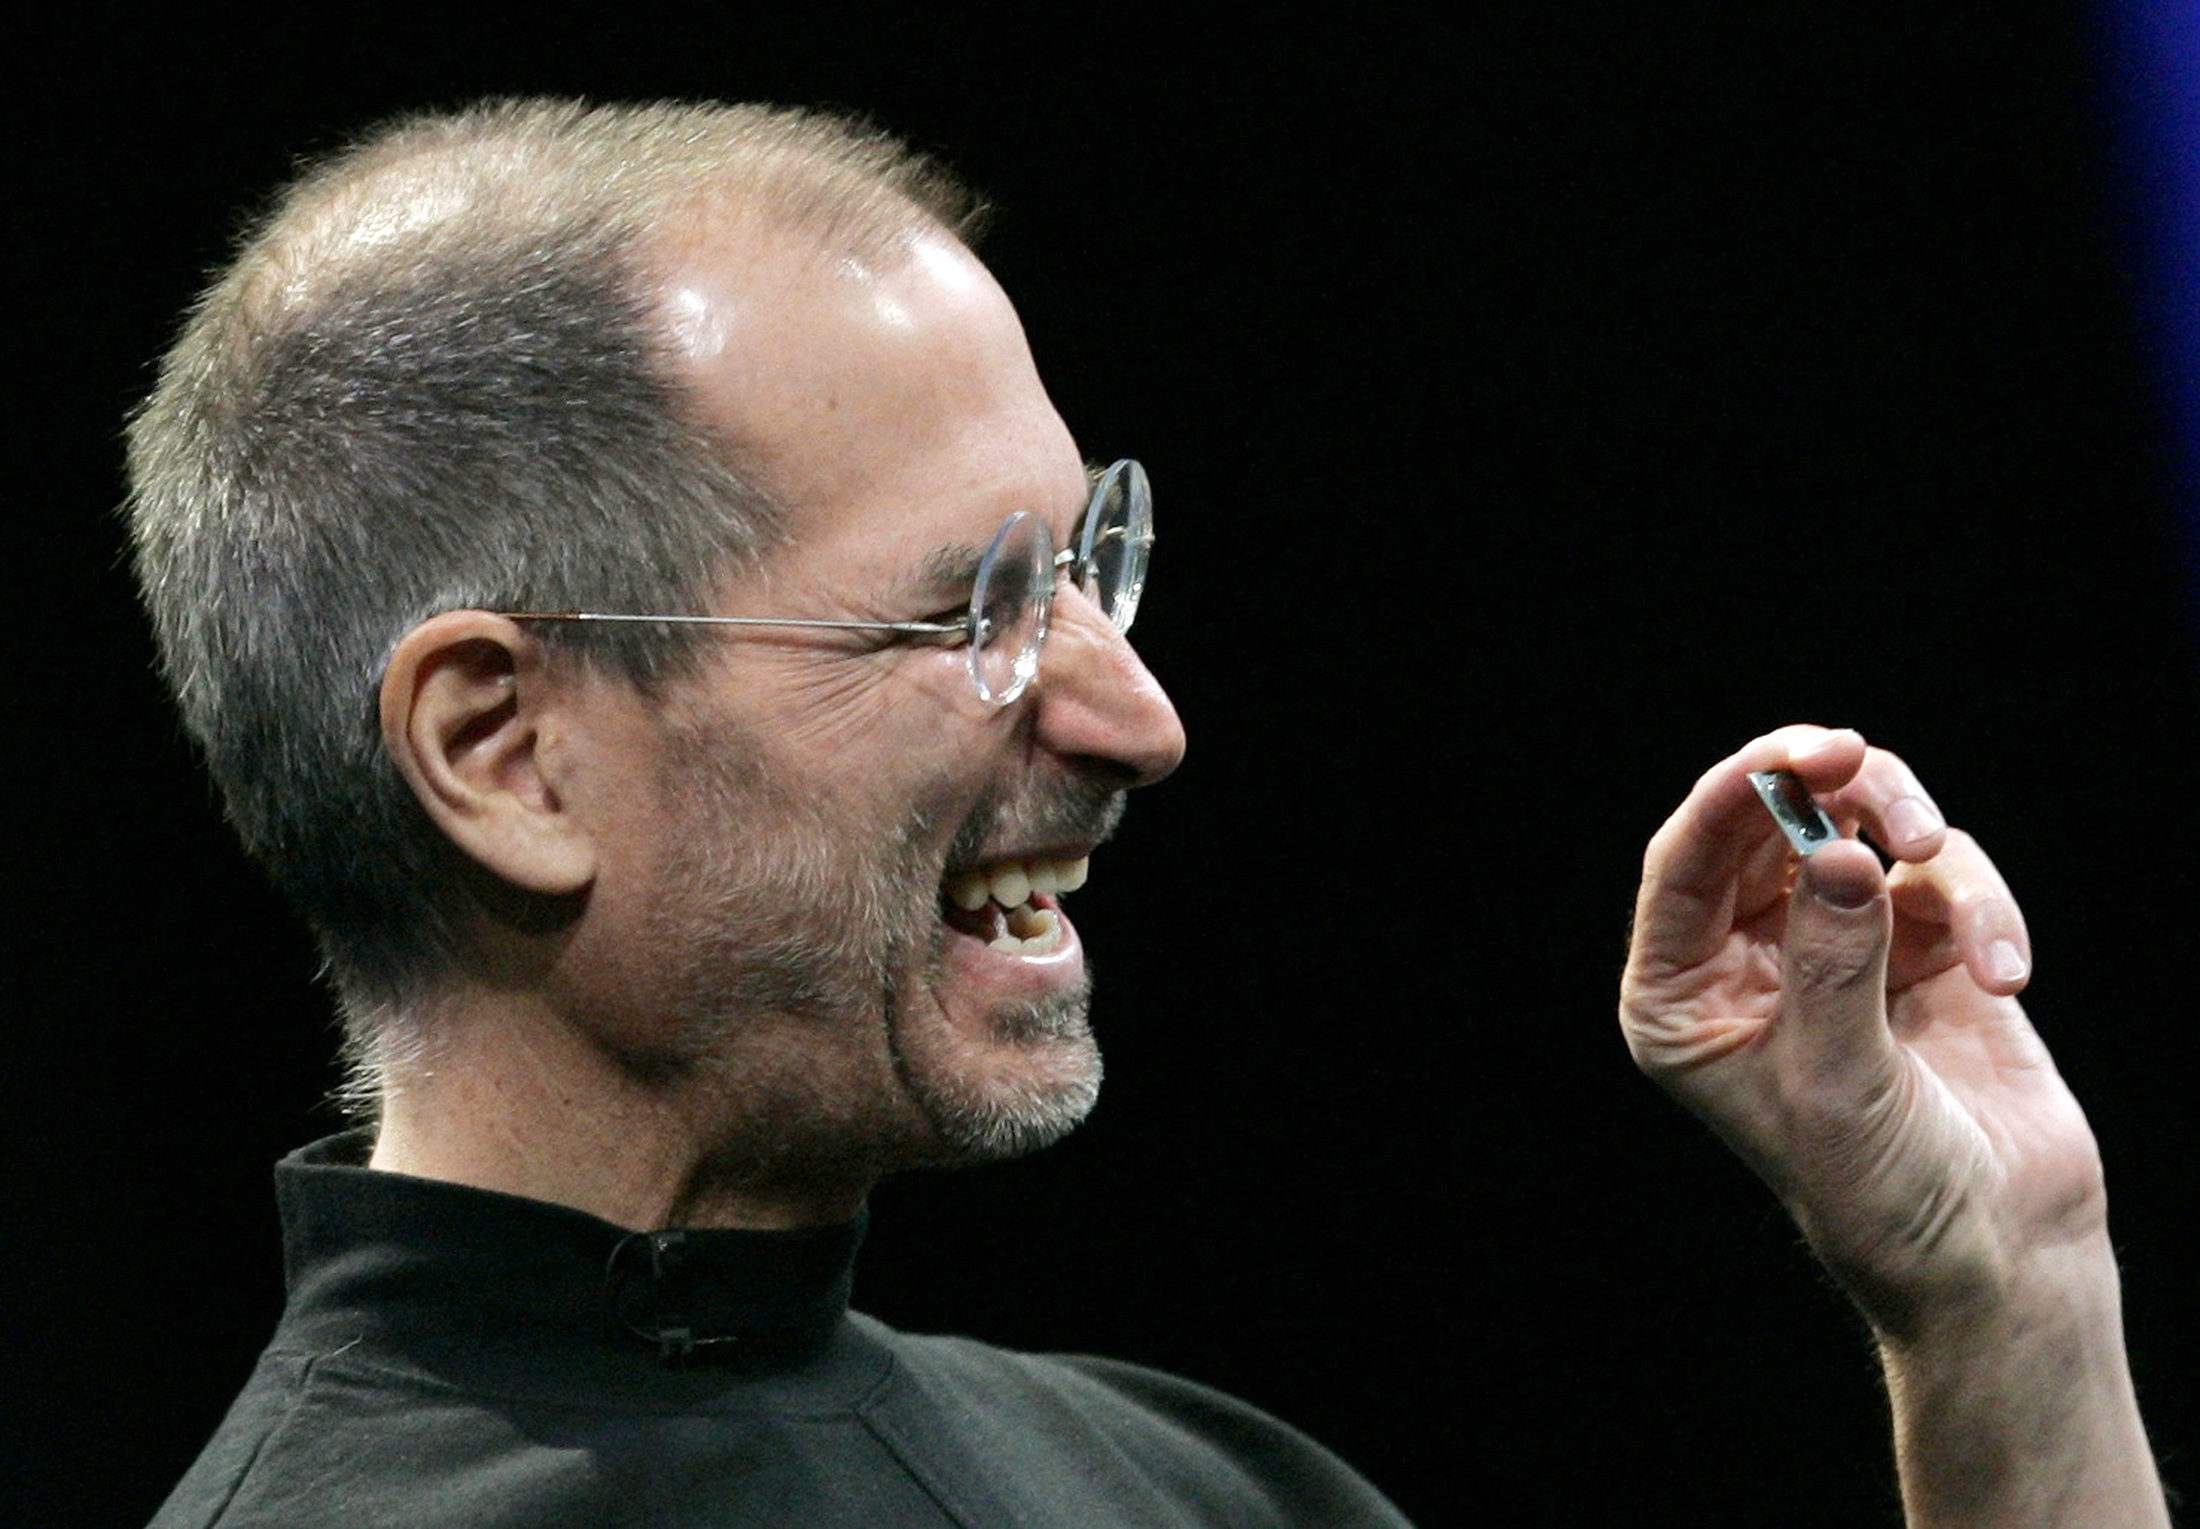 Đánh sách: Nỗi ám ảnh về iPhone của Steve Jobs đã dẫn đến cuộc cách mạng silicon của Apple